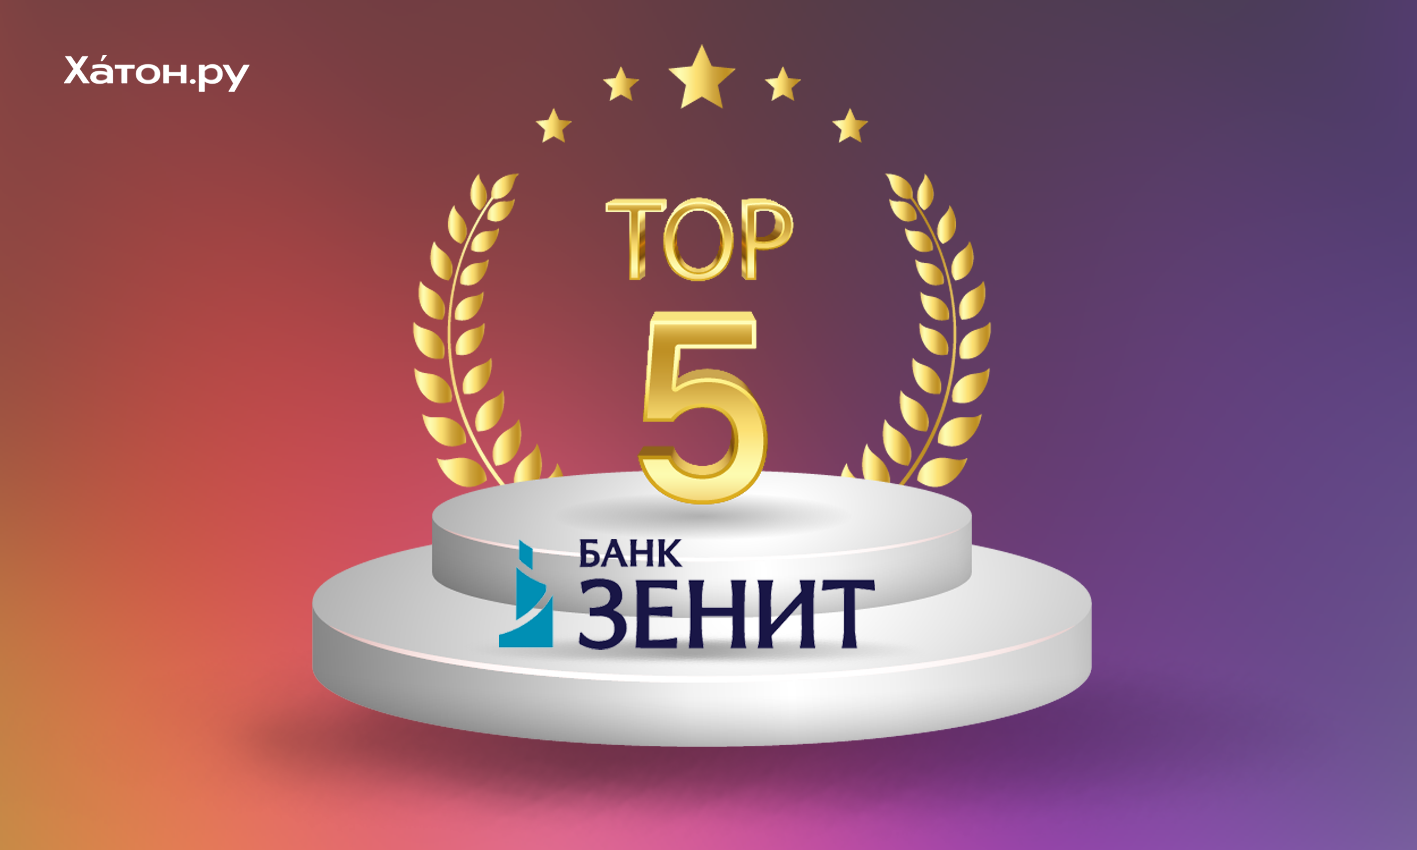 Банк ЗЕНИТ вошел в ТОП-5 рейтинга лучших программ на первичном рынке жилья